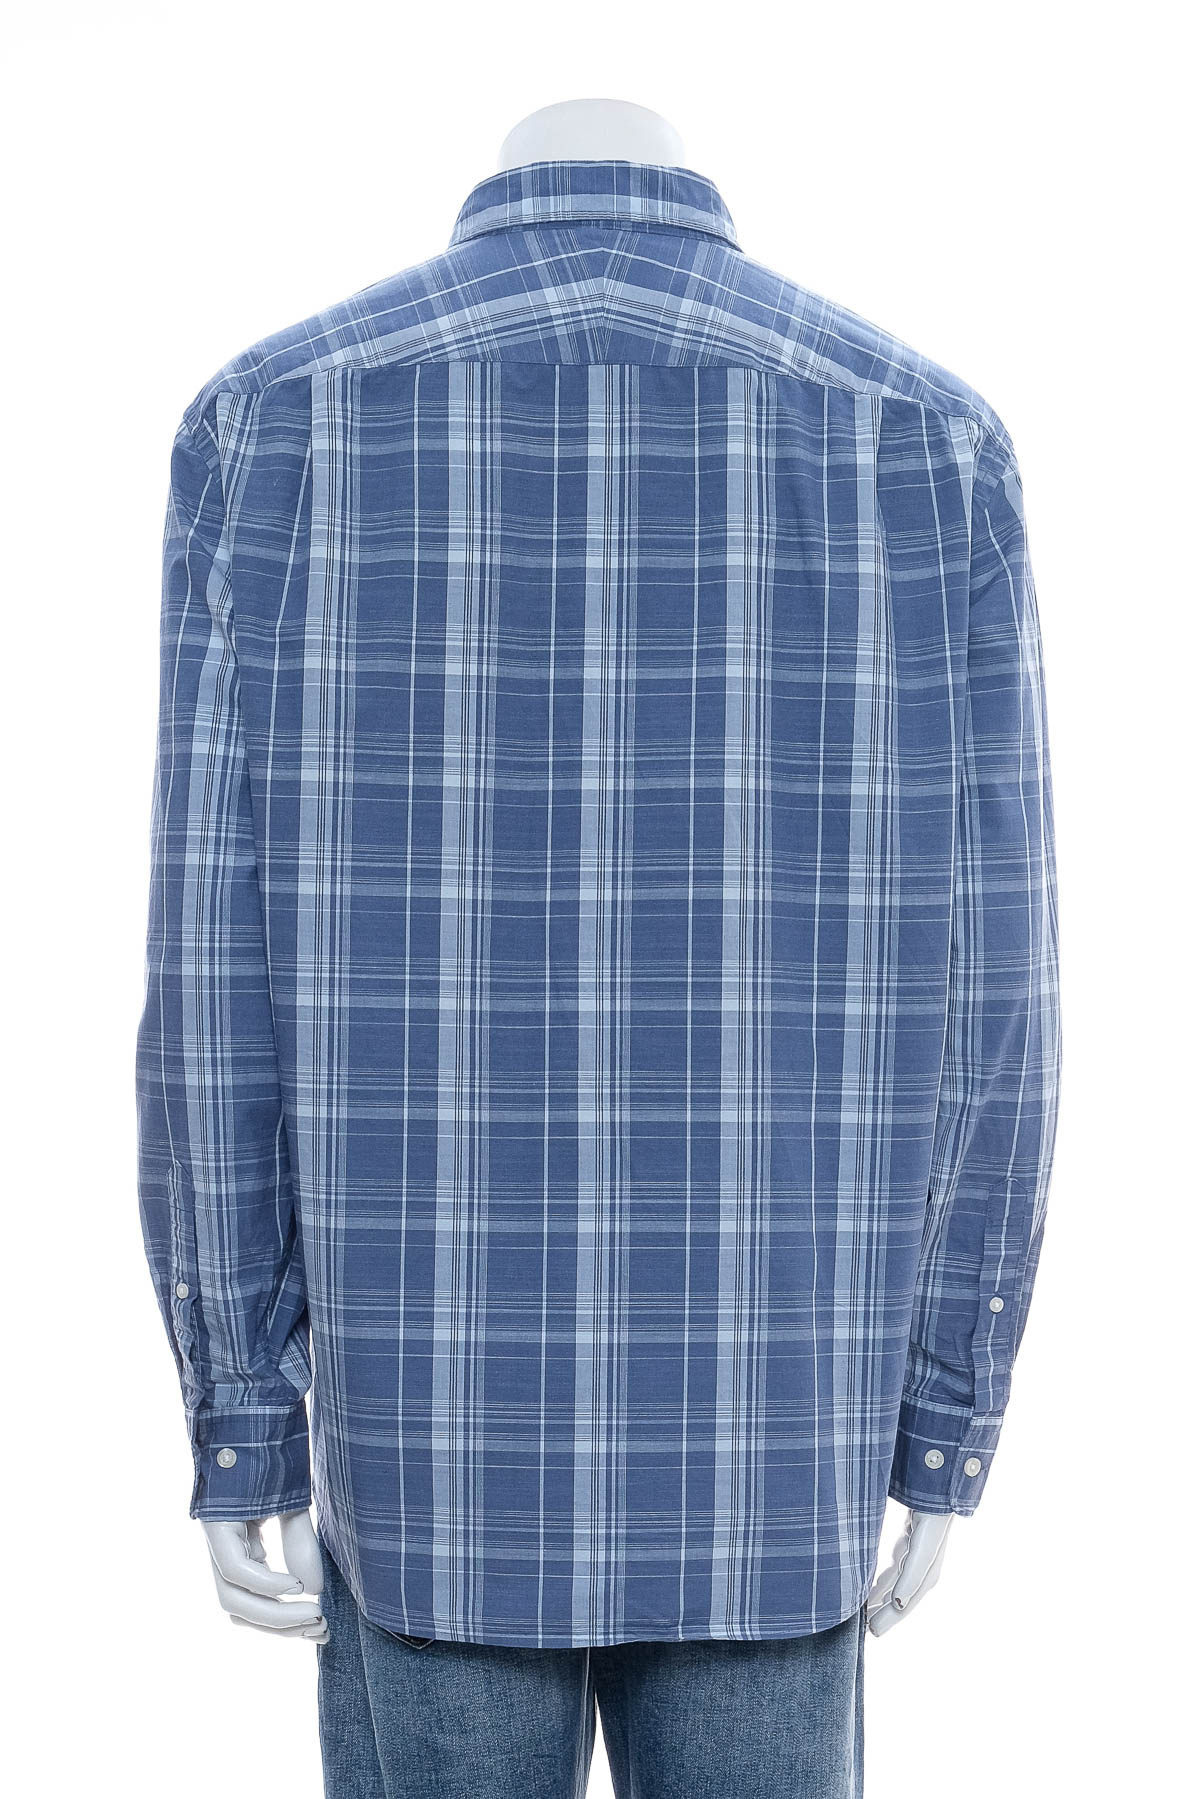 Men's shirt - CHARLES TYRWHITT - 1